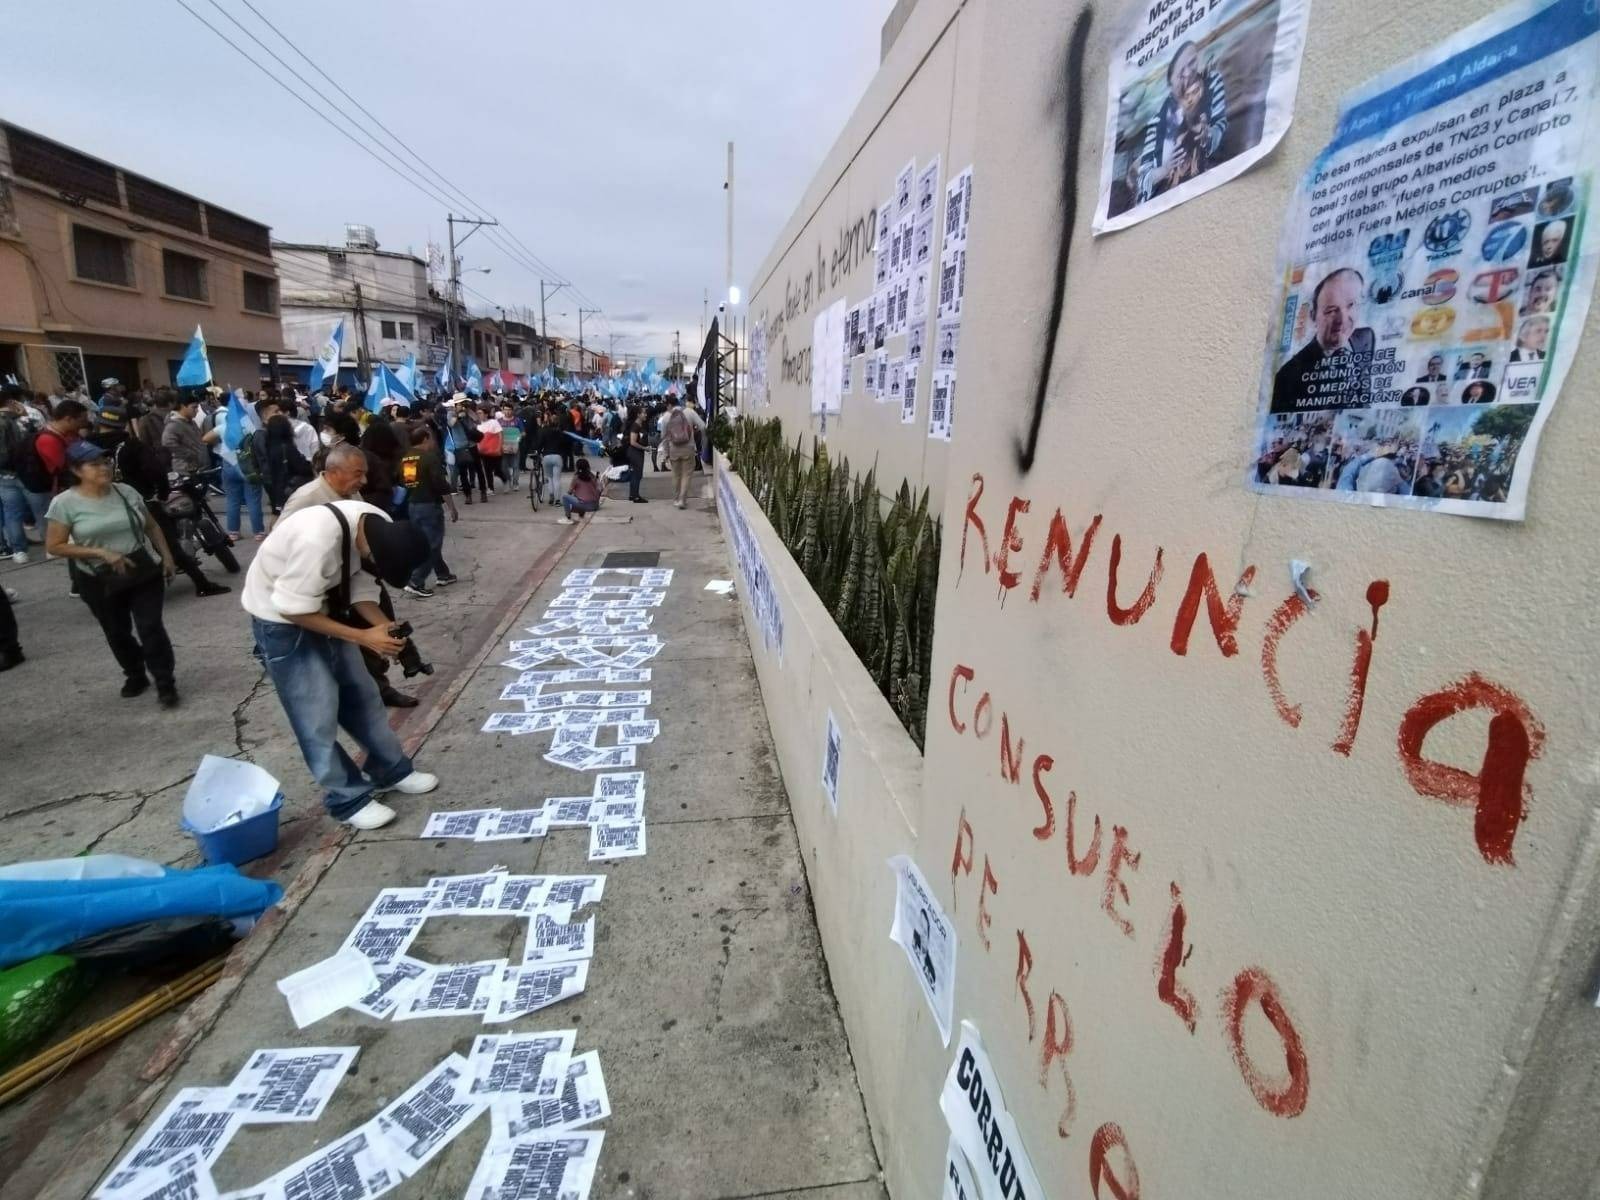 Movimiento Semilla rumbo a la segunda vuelta en Guatemala entre manifestaciones y acciones en las Cortes